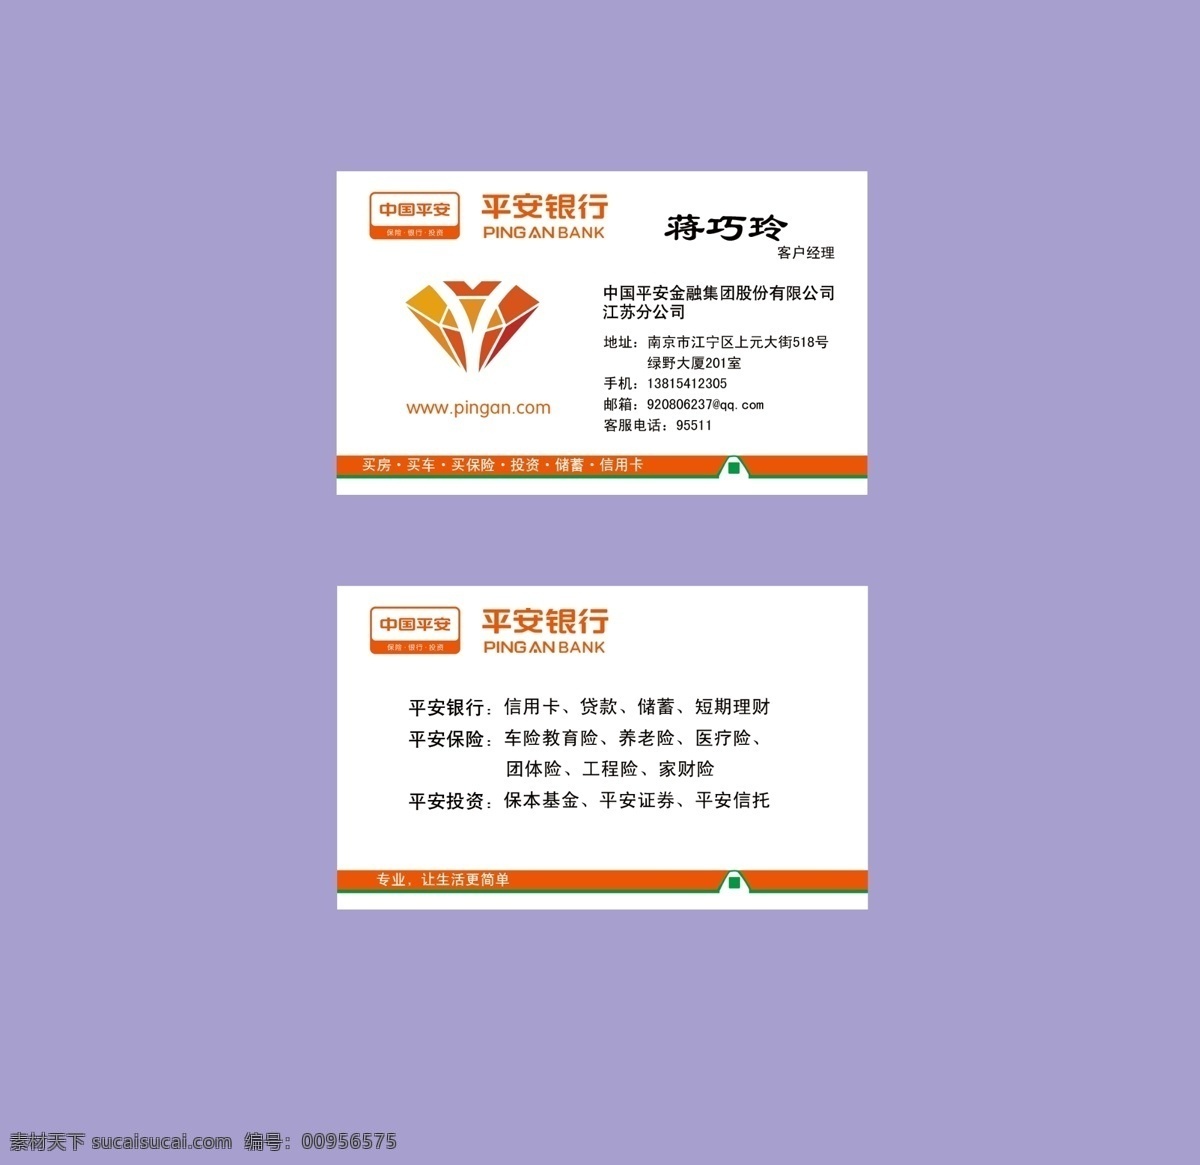 中国平安 银行 钻石 俱乐部 名片 中国平安银行 钻石俱乐部 标志 简约 橙色 保险 名片卡片